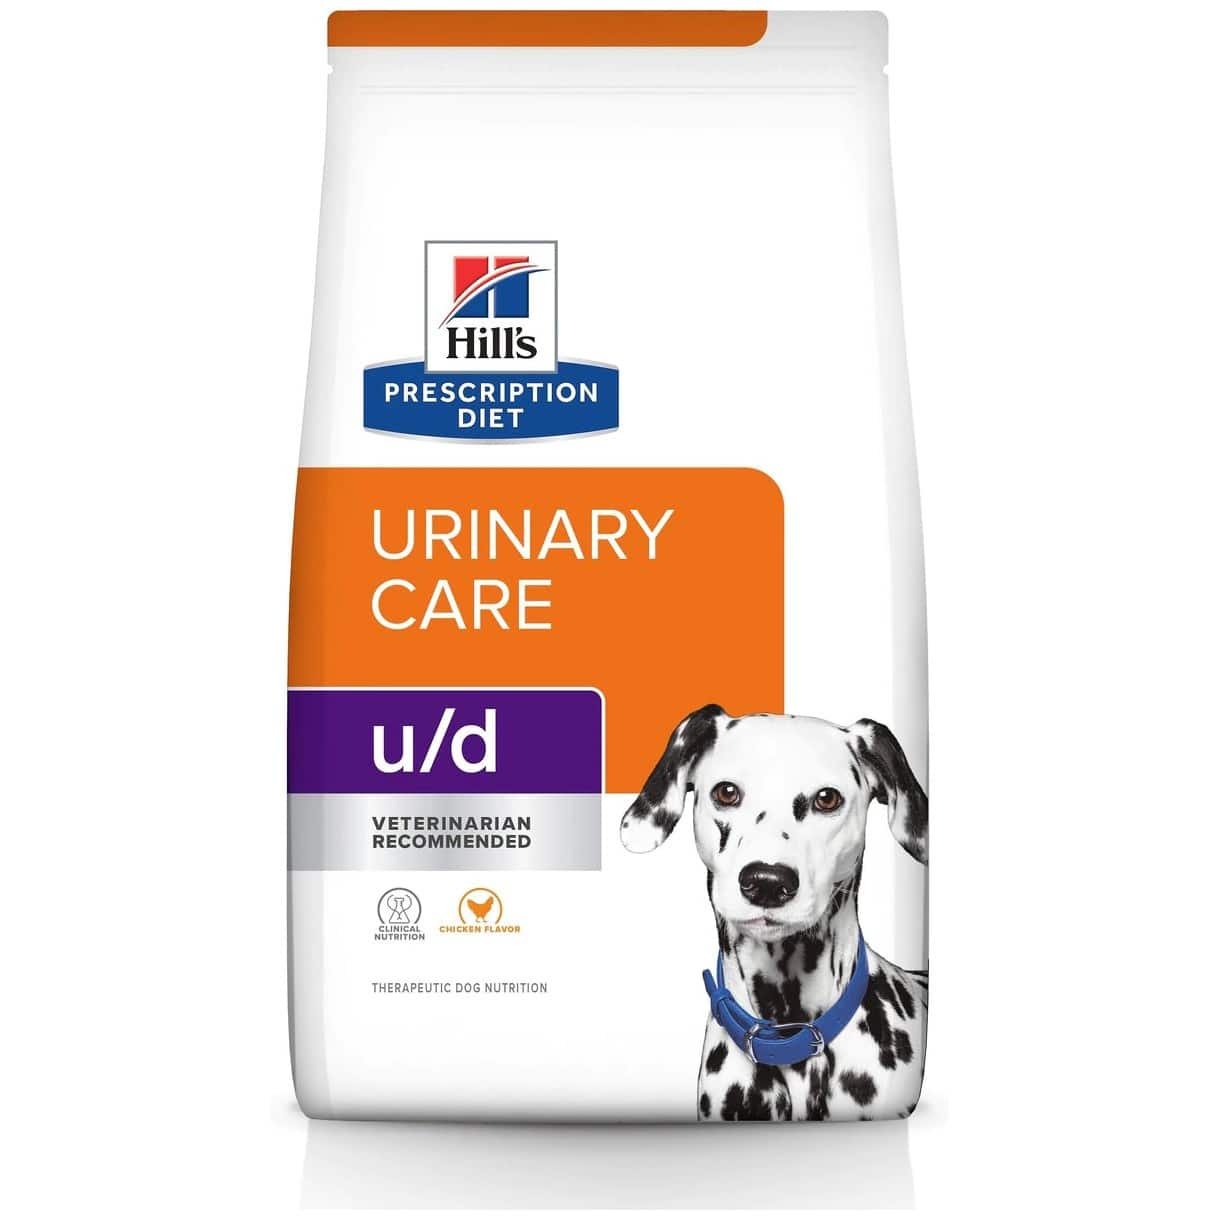 Hill's Prescription Diet u/d Urinary Care Original Flavor Dry Dog Food